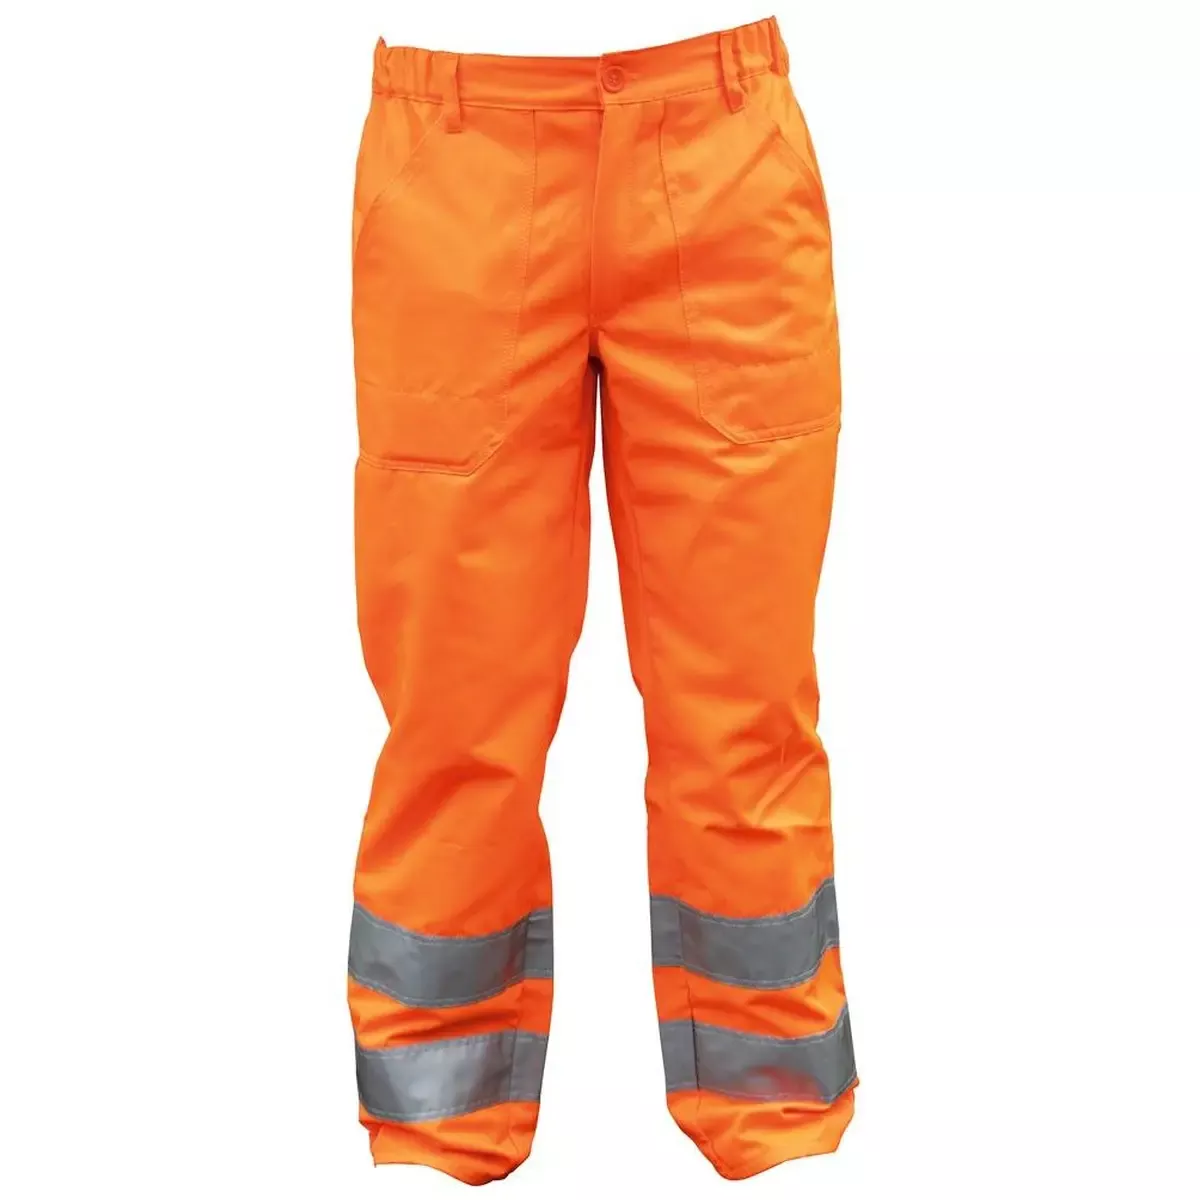 Warnschutz-Bundhose einfarbig, Farbe warnorange, Gr. 44